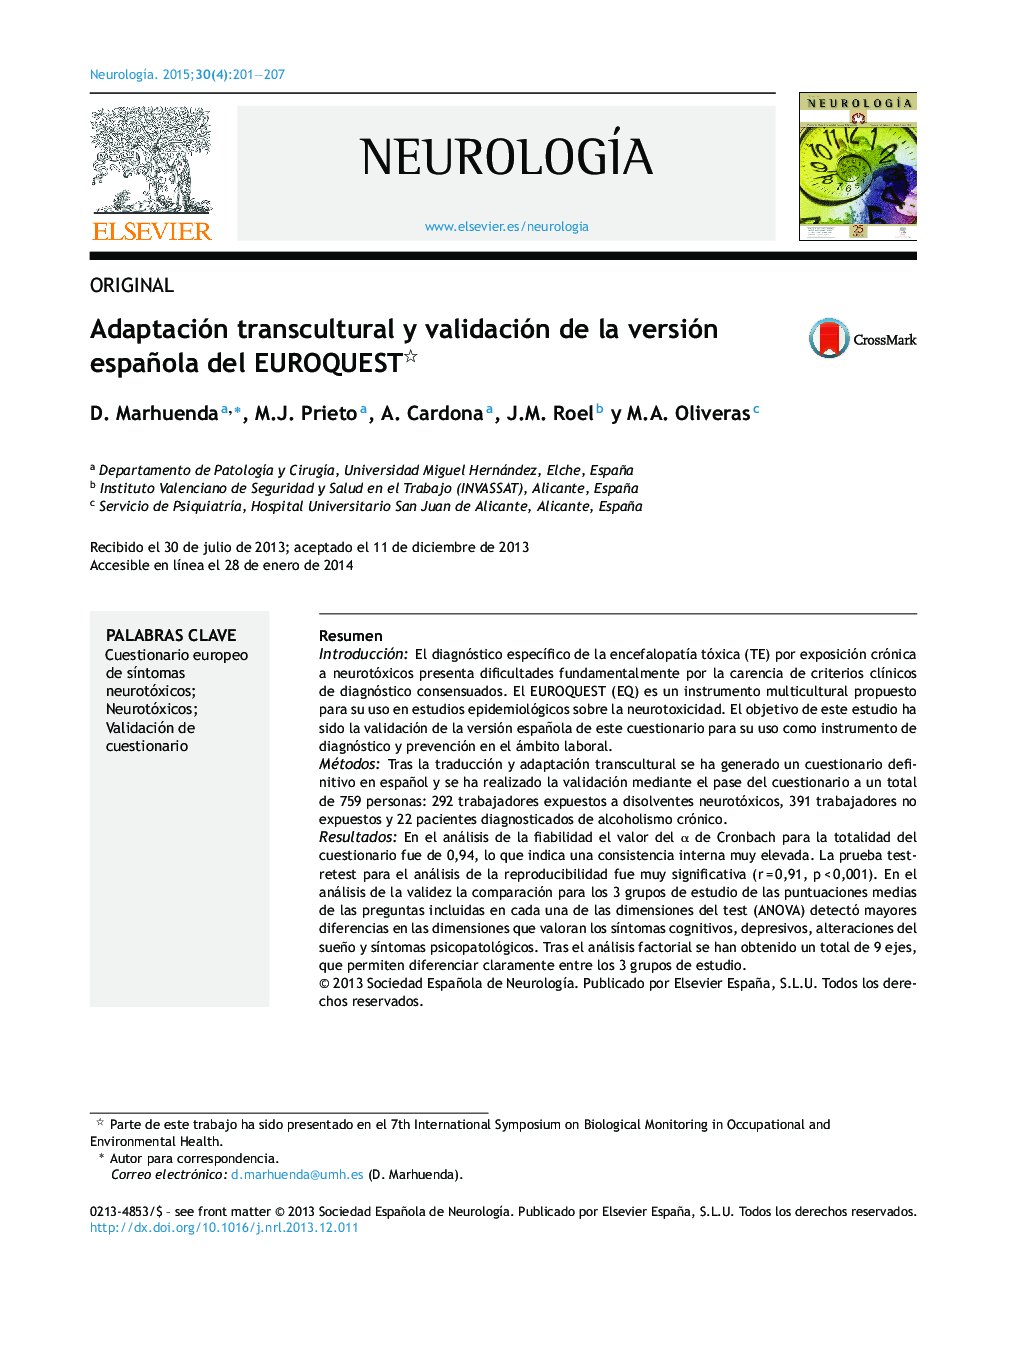 Adaptación transcultural y validación de la versión española del EUROQUEST